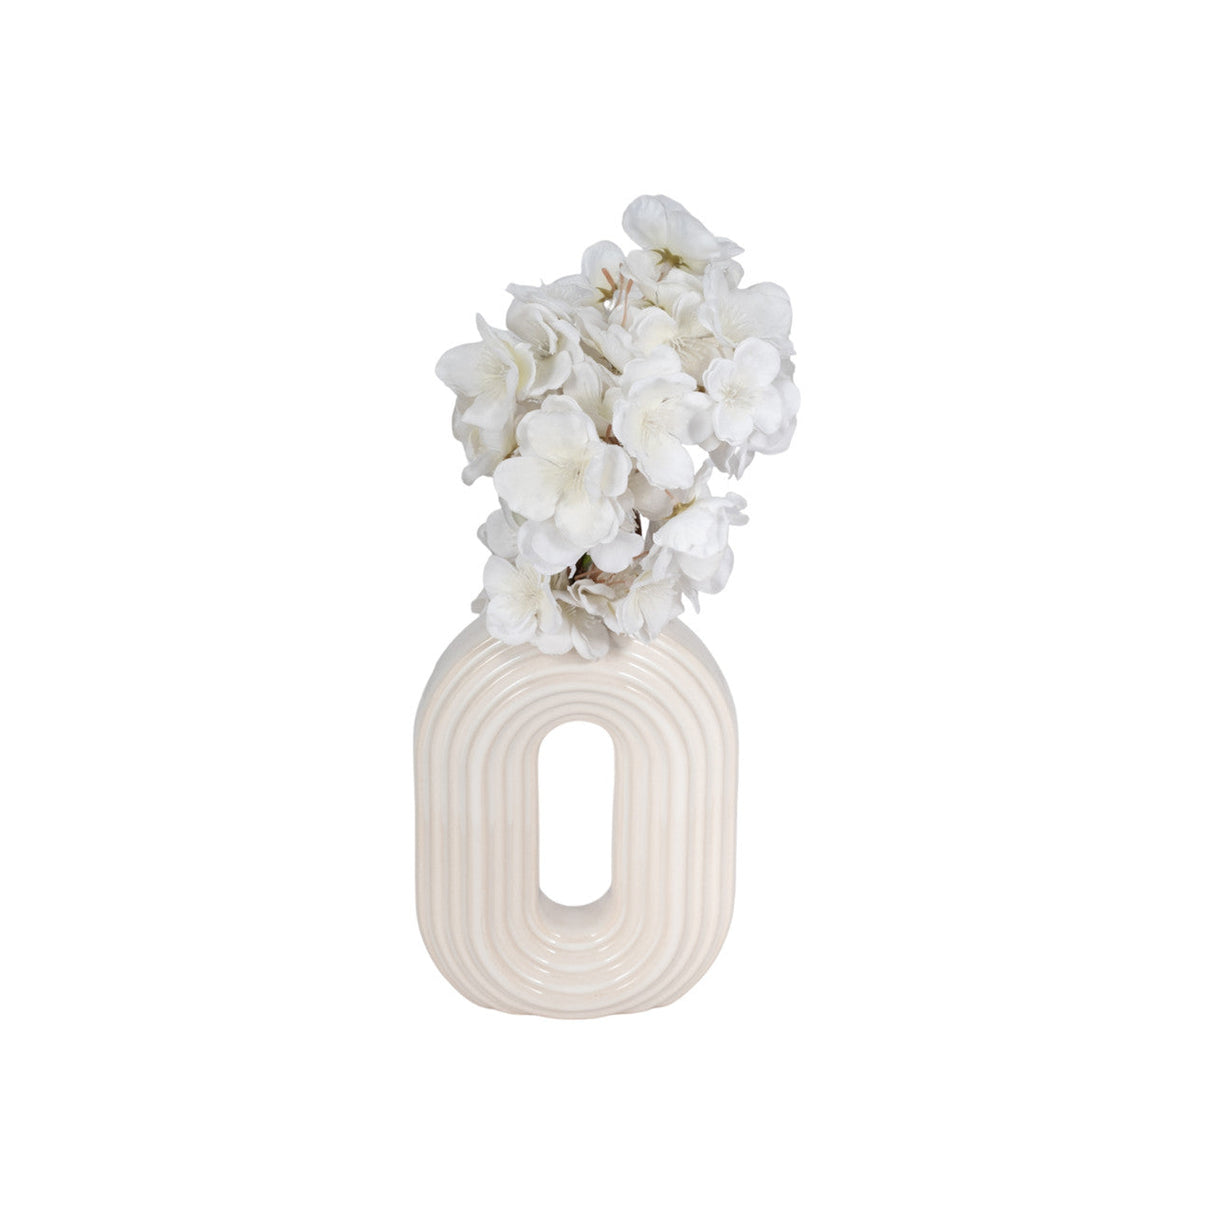 8" Oval Arch Vase, Ivory